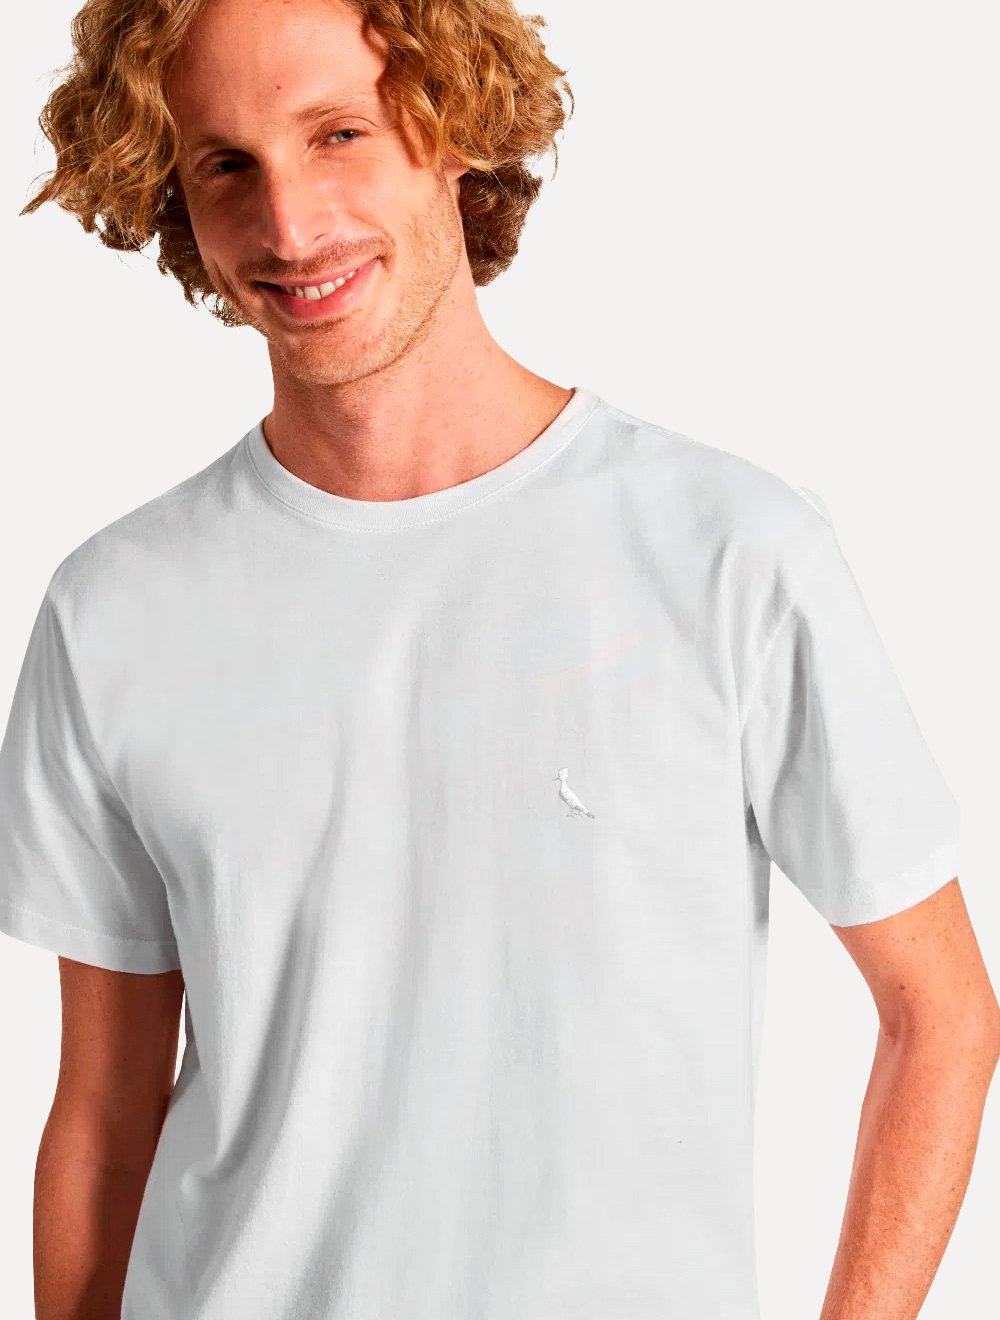 Camiseta Reserva Masculina Regular Pima Cotton Branca